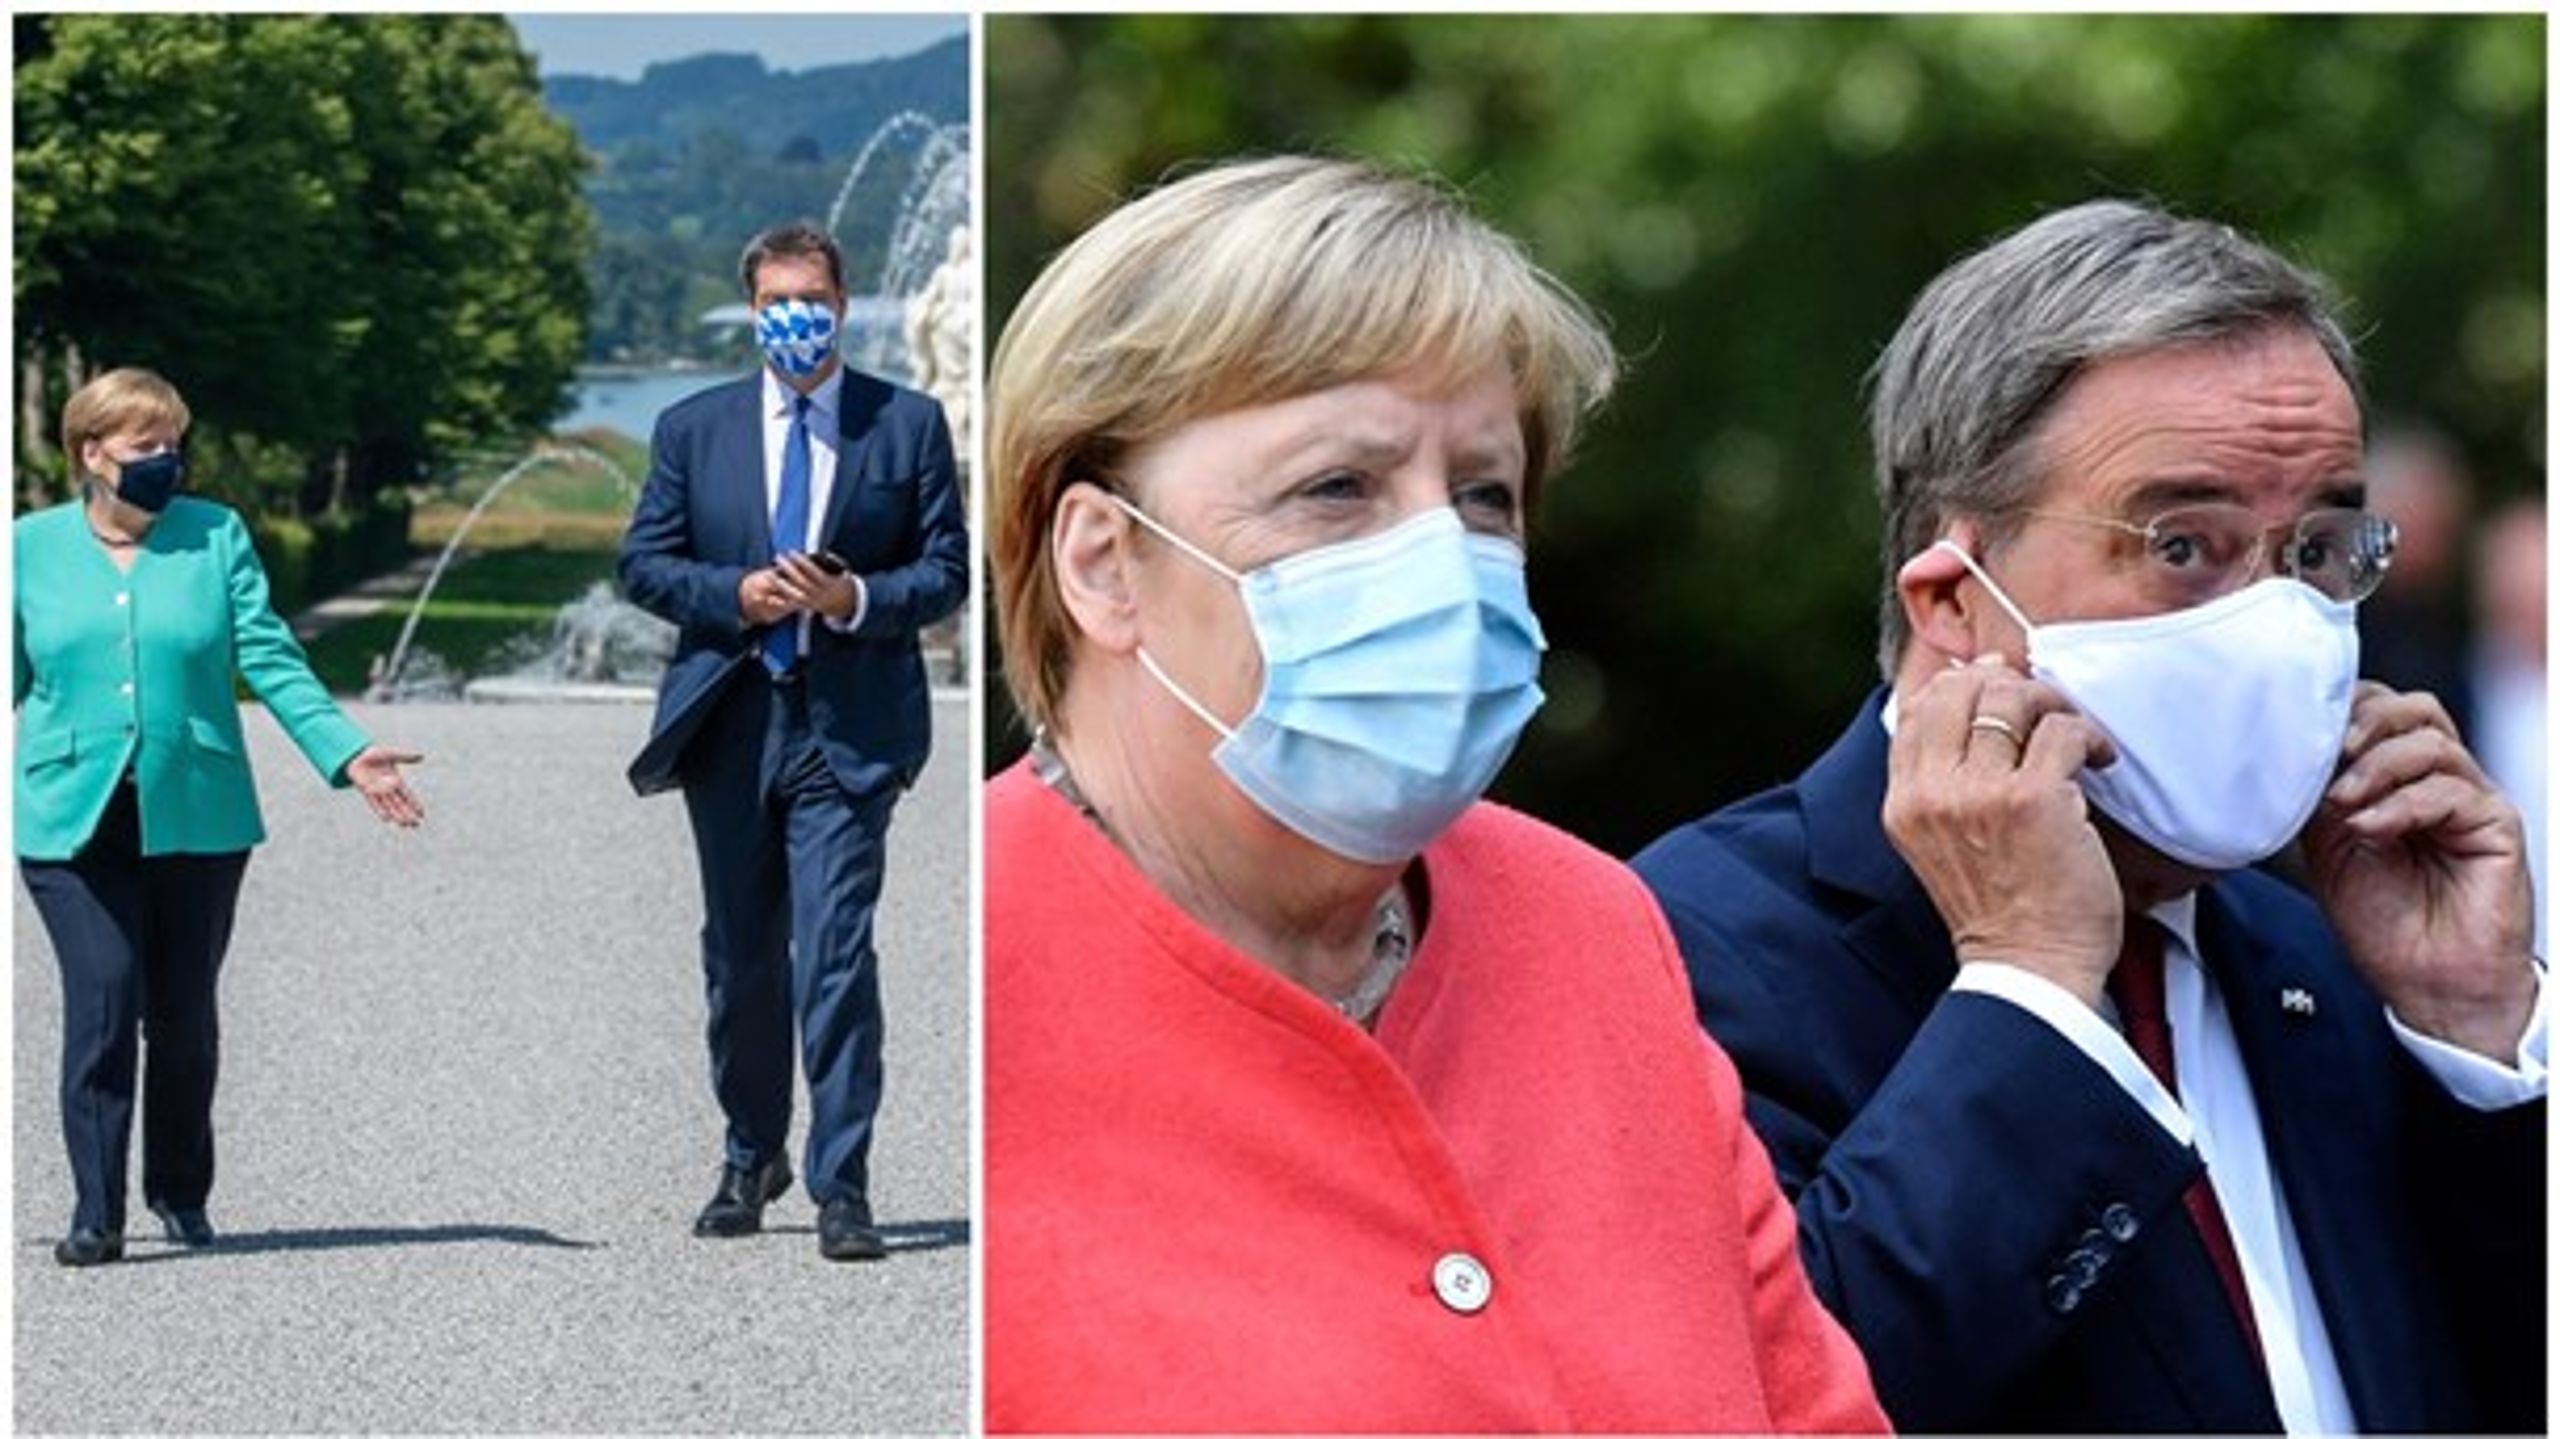 Blir det Armin Laschet (t.h.) som efterträder Angela Merkel eller är Markus Söder (t.v.) på marsch mot kanslerposten?